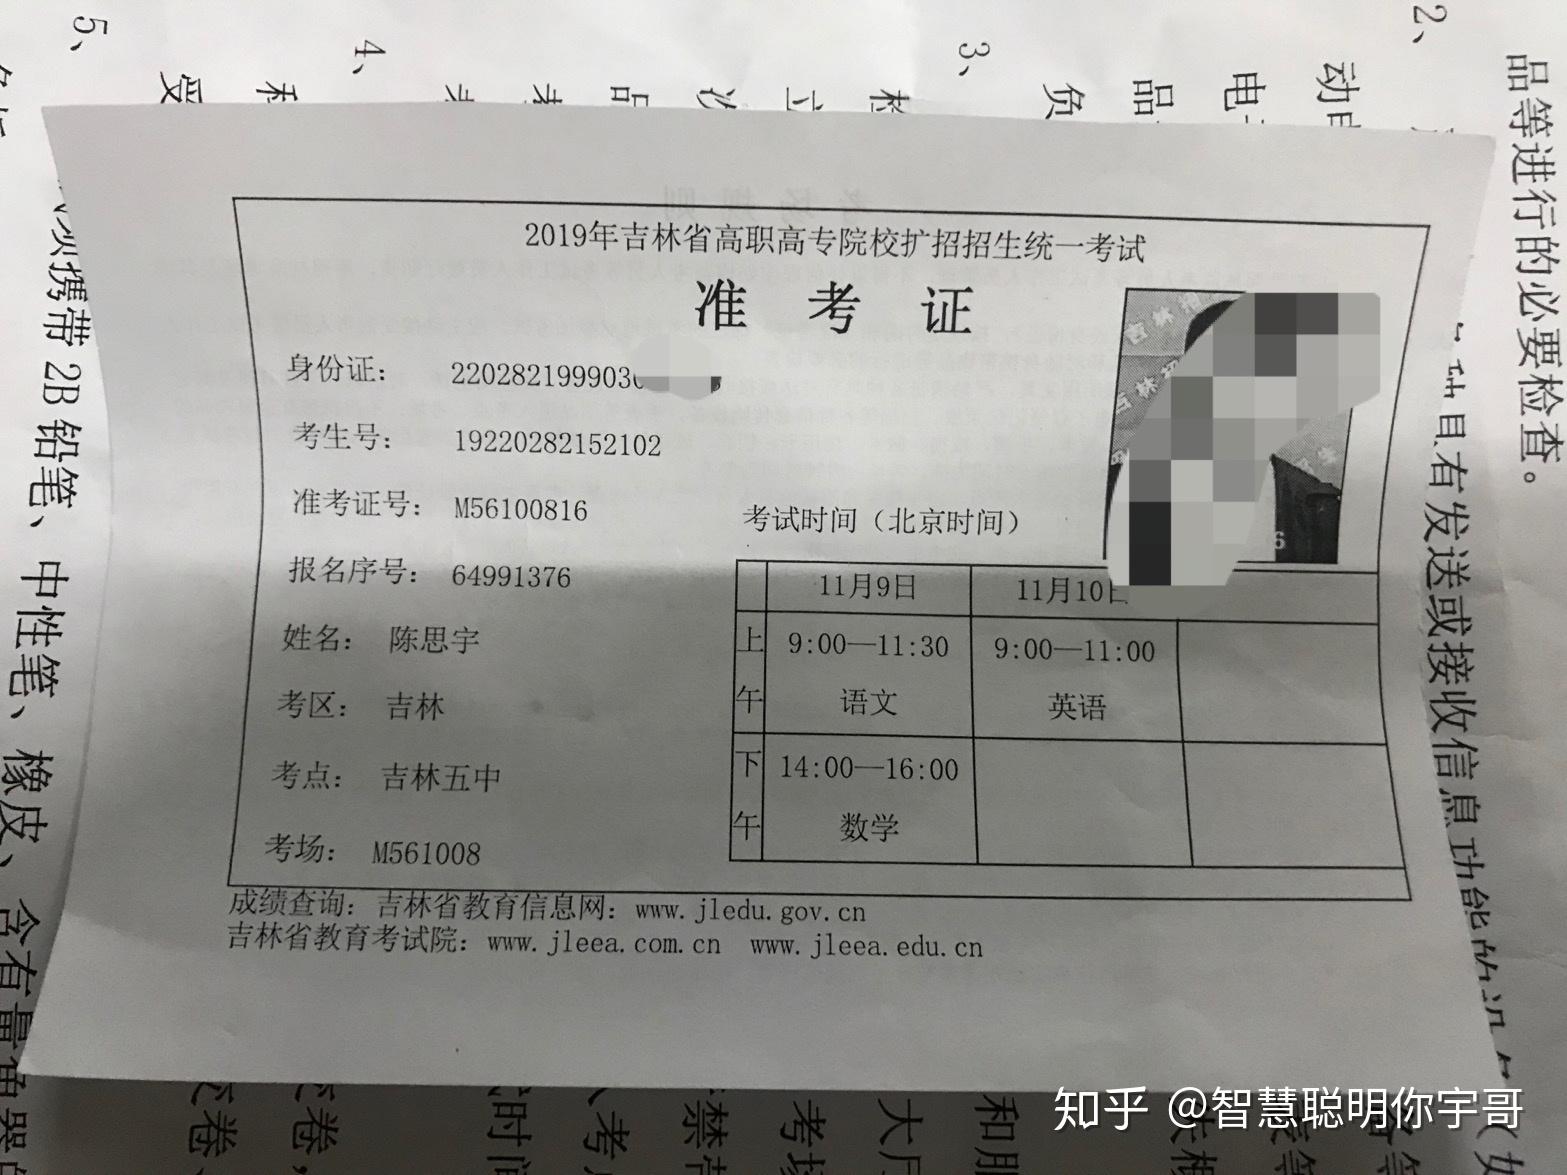 四川省2021年高考文科成绩排名一分段统计表_四川高考_一品高考网